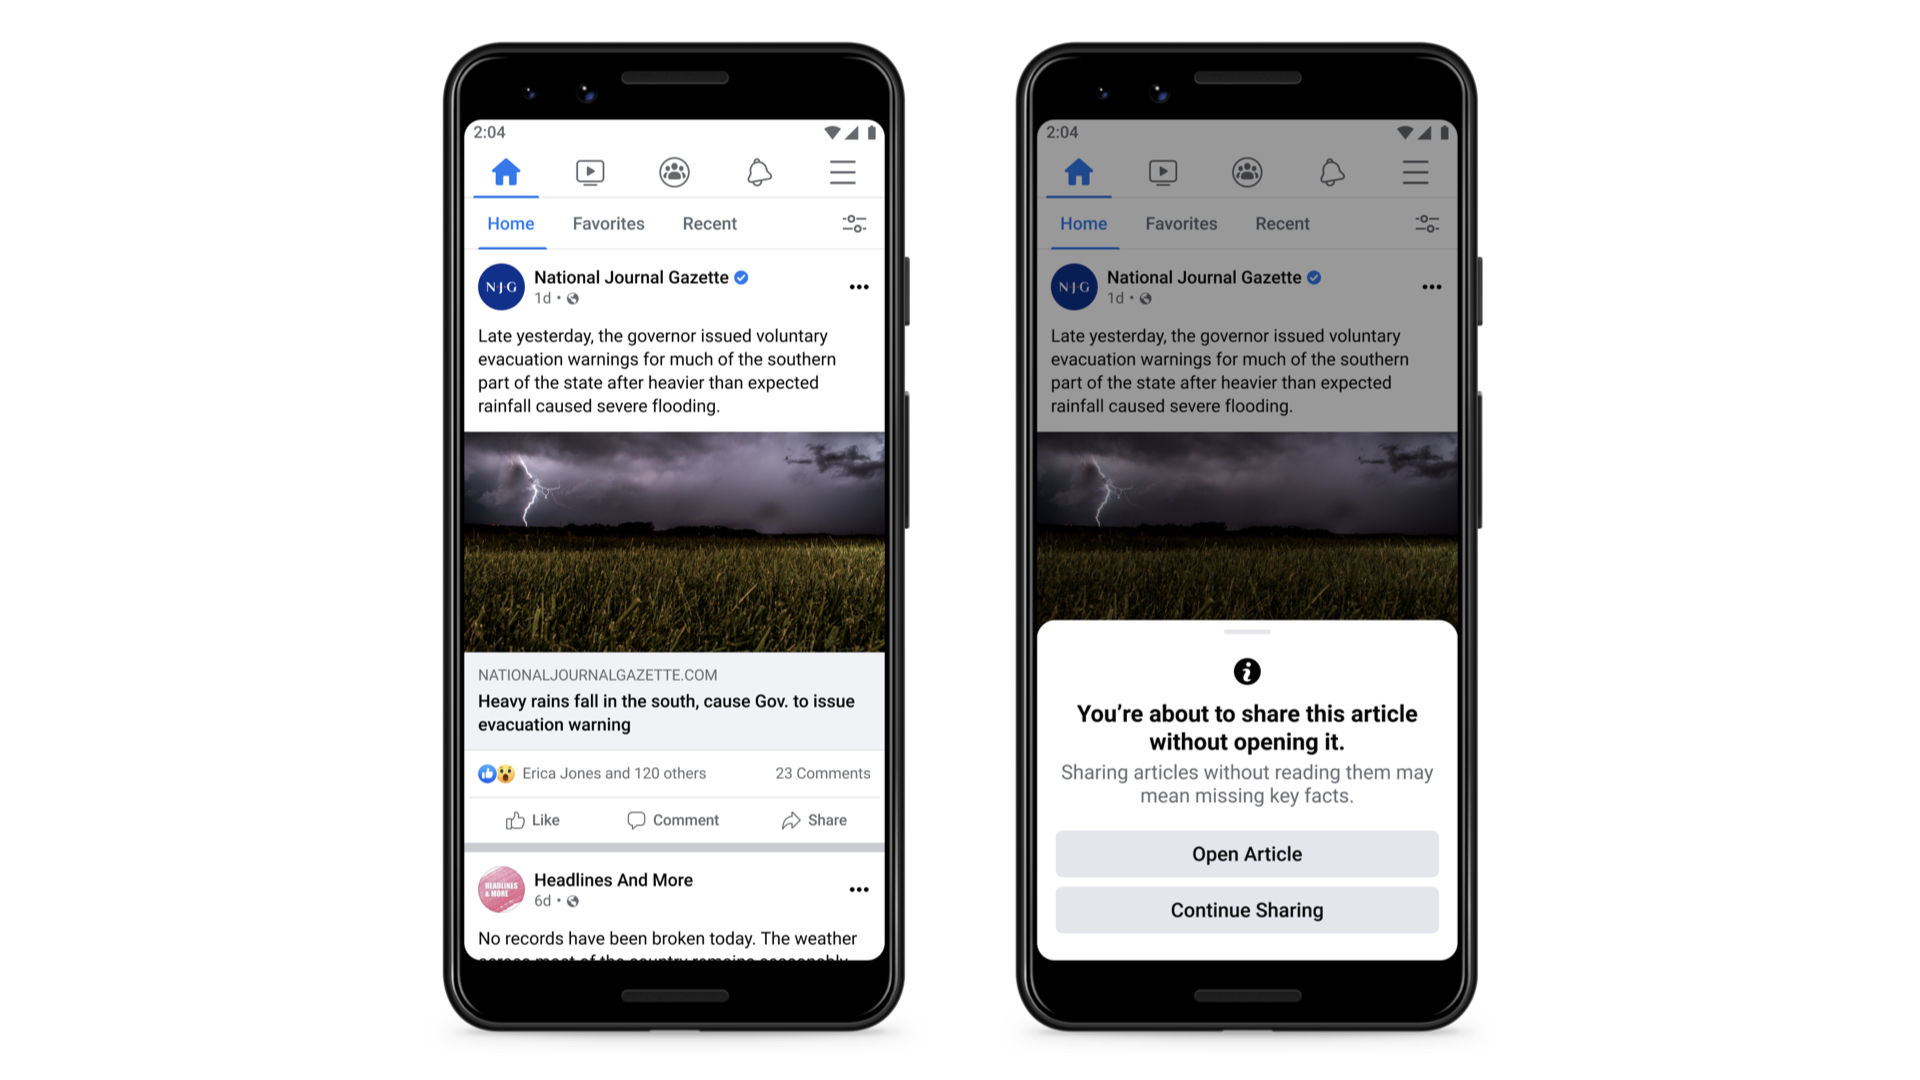 <p>Susul kebijakan Twitter, Facebook uji fitur baru agar pengguna membaca artikel sebelum membagikannya untuk mencegah tersebarnya berita palsu/twitter.com/facebook</p>
